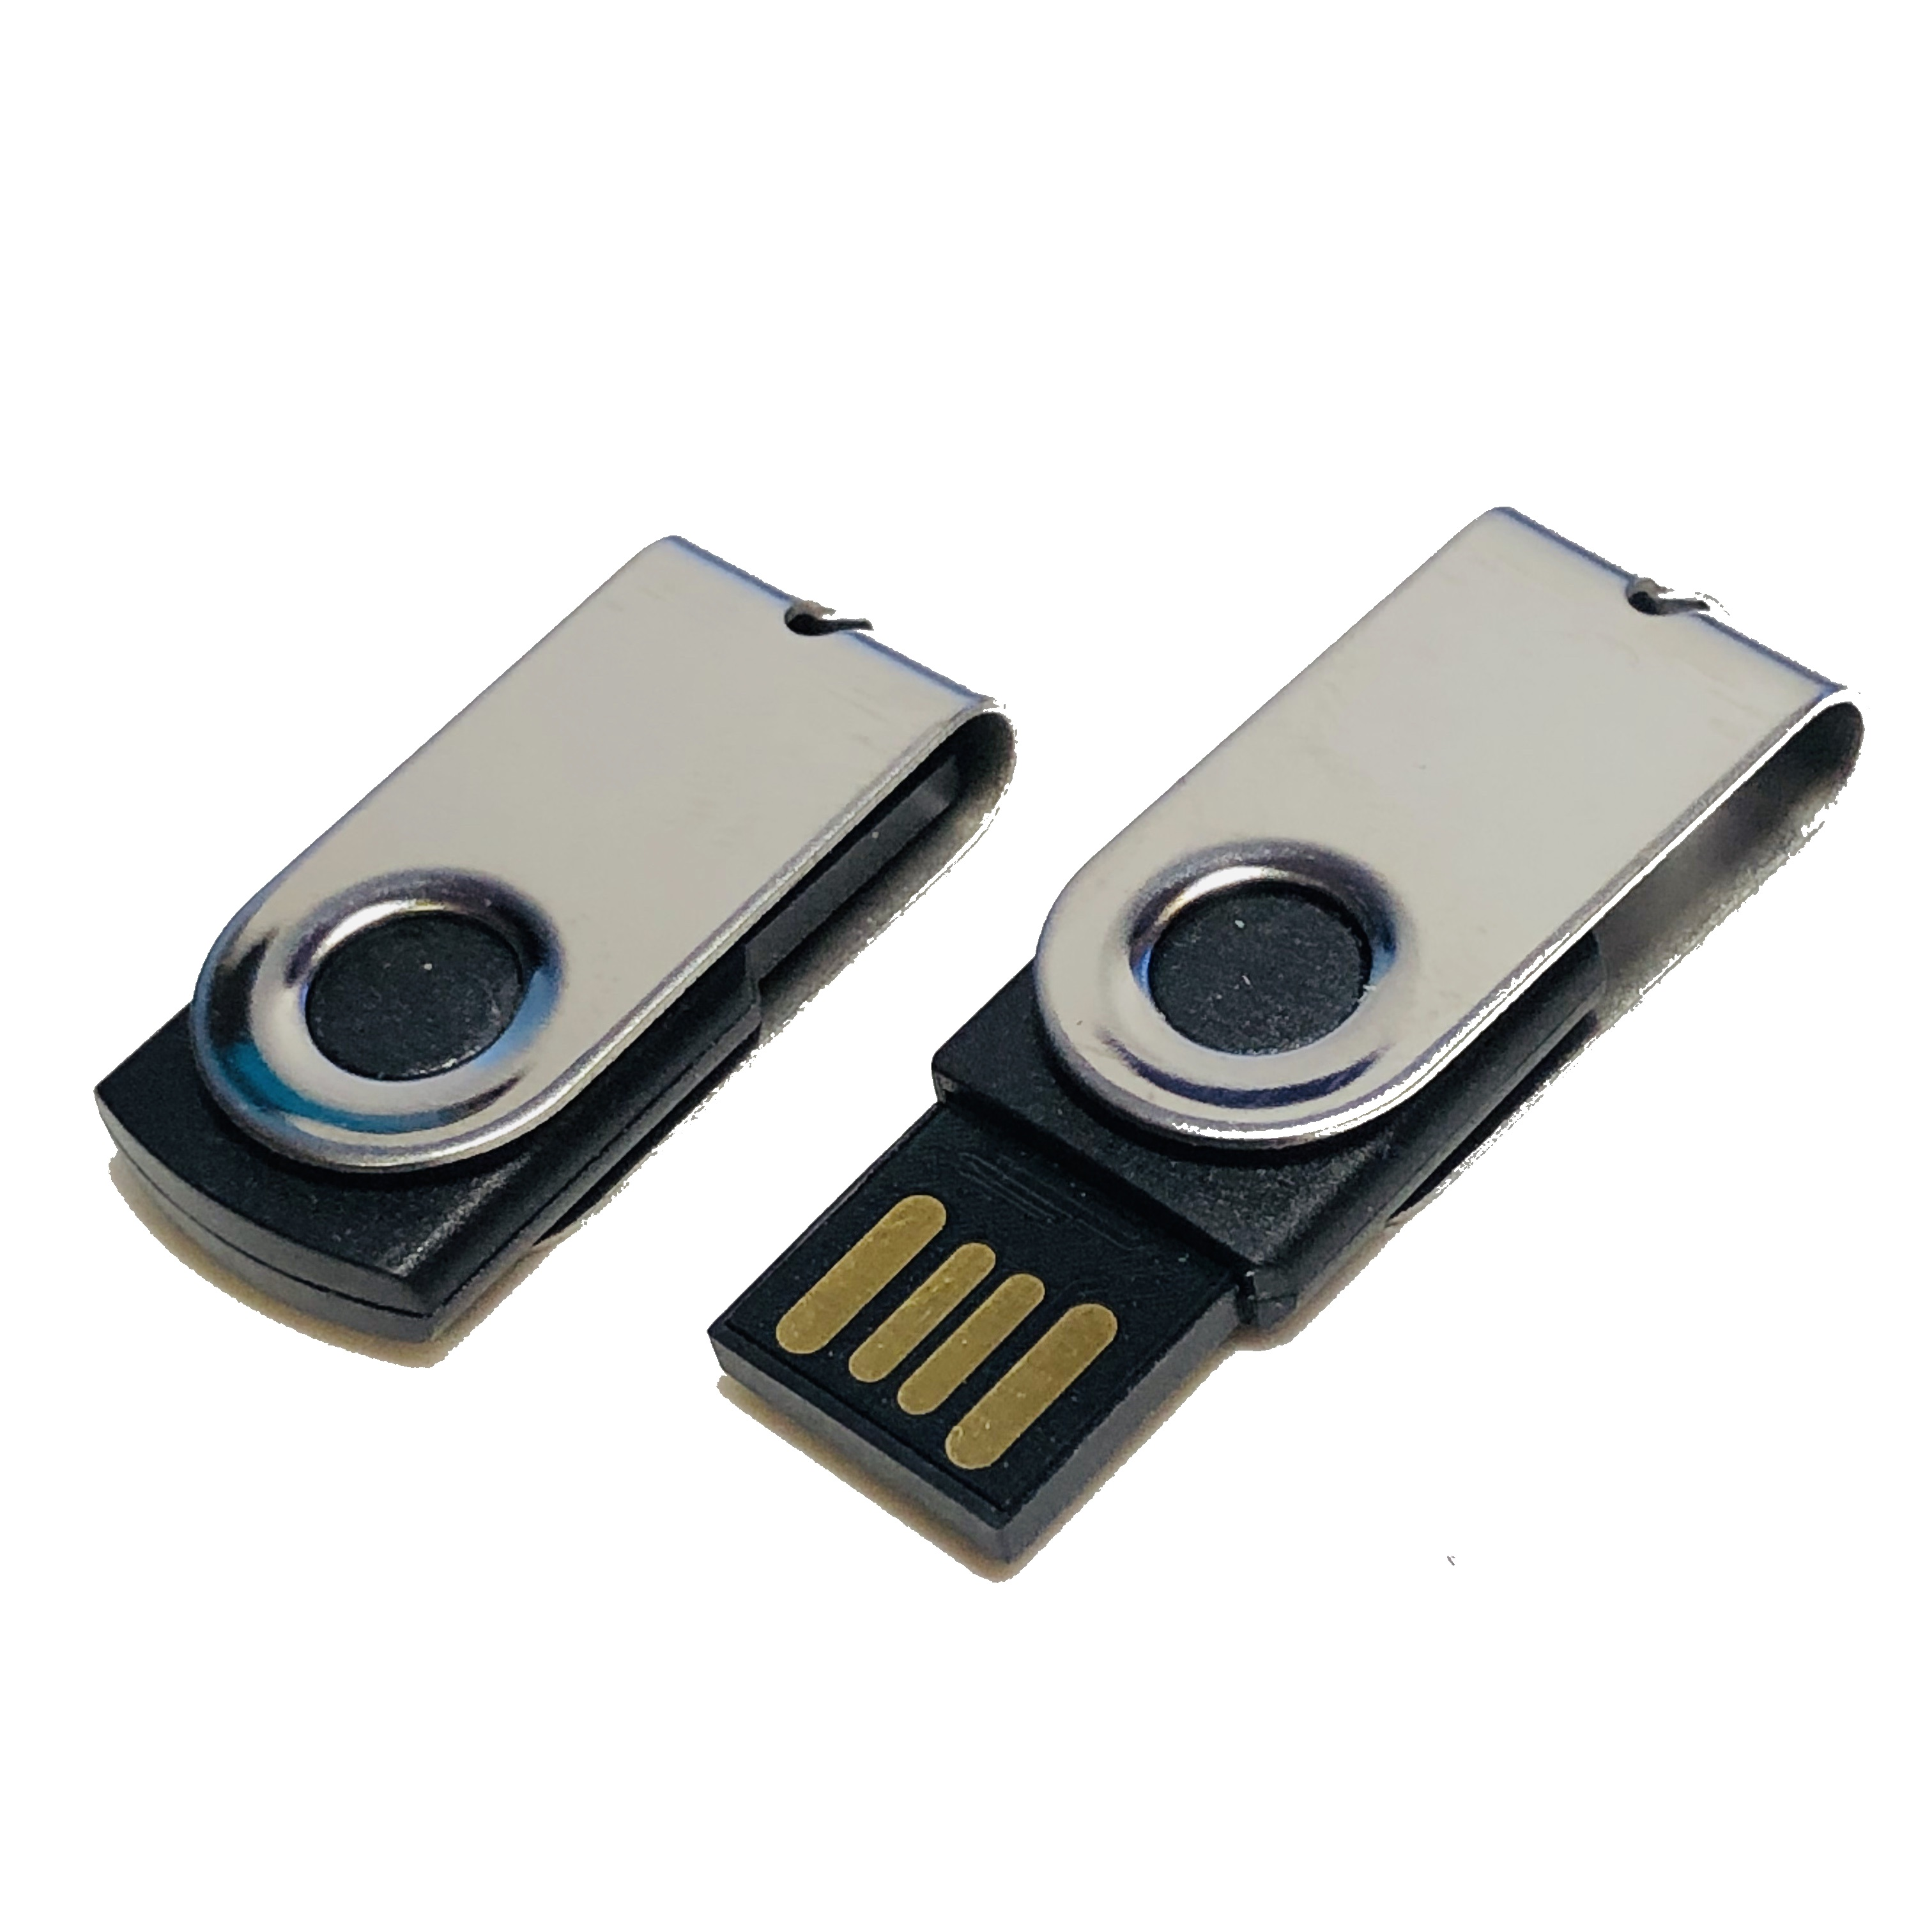 GB) GERMANY USB (Schwarz-Chrome, USB-Stick 2 ® MINI-SWIVEL